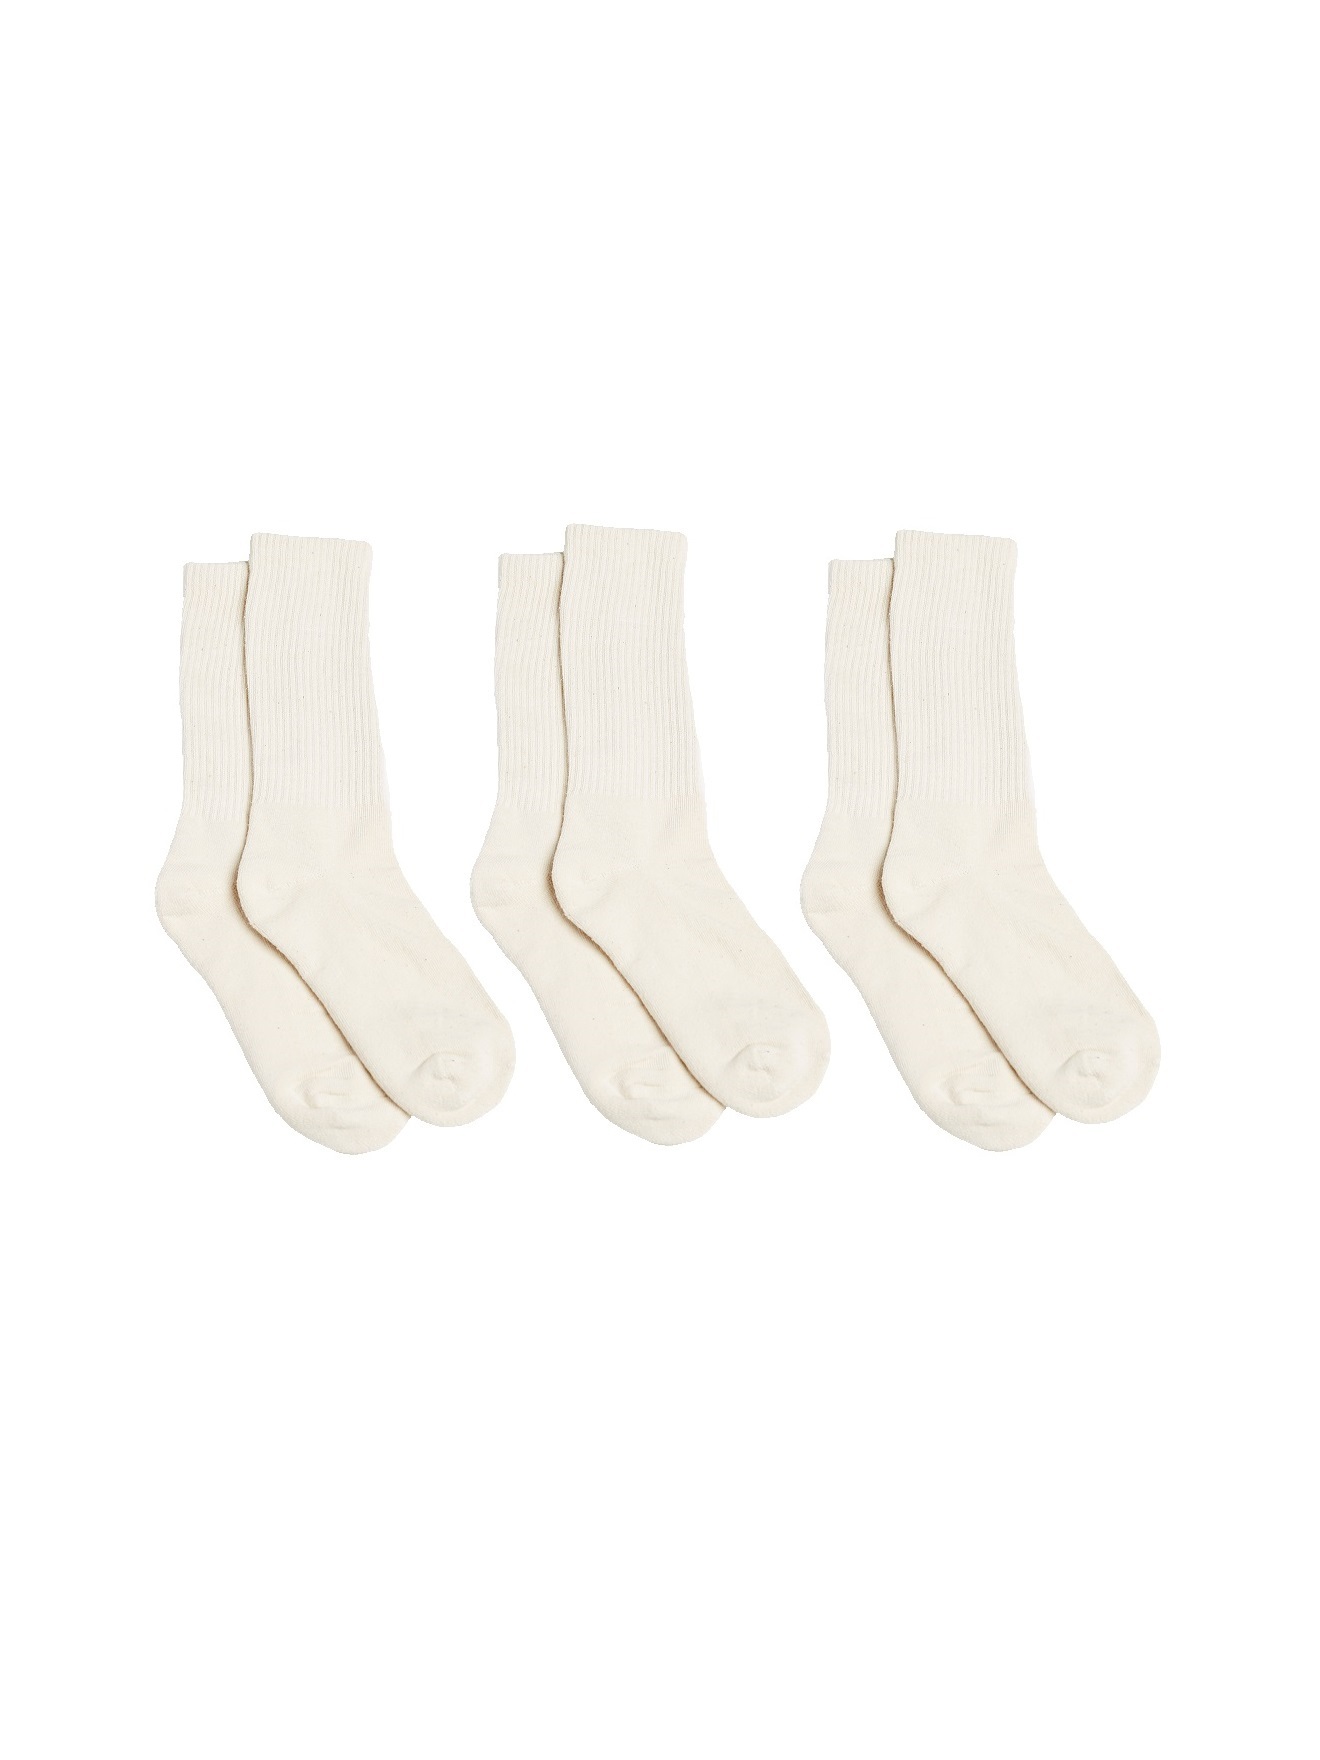 Hemp Socks — Hemp Clothing Australia